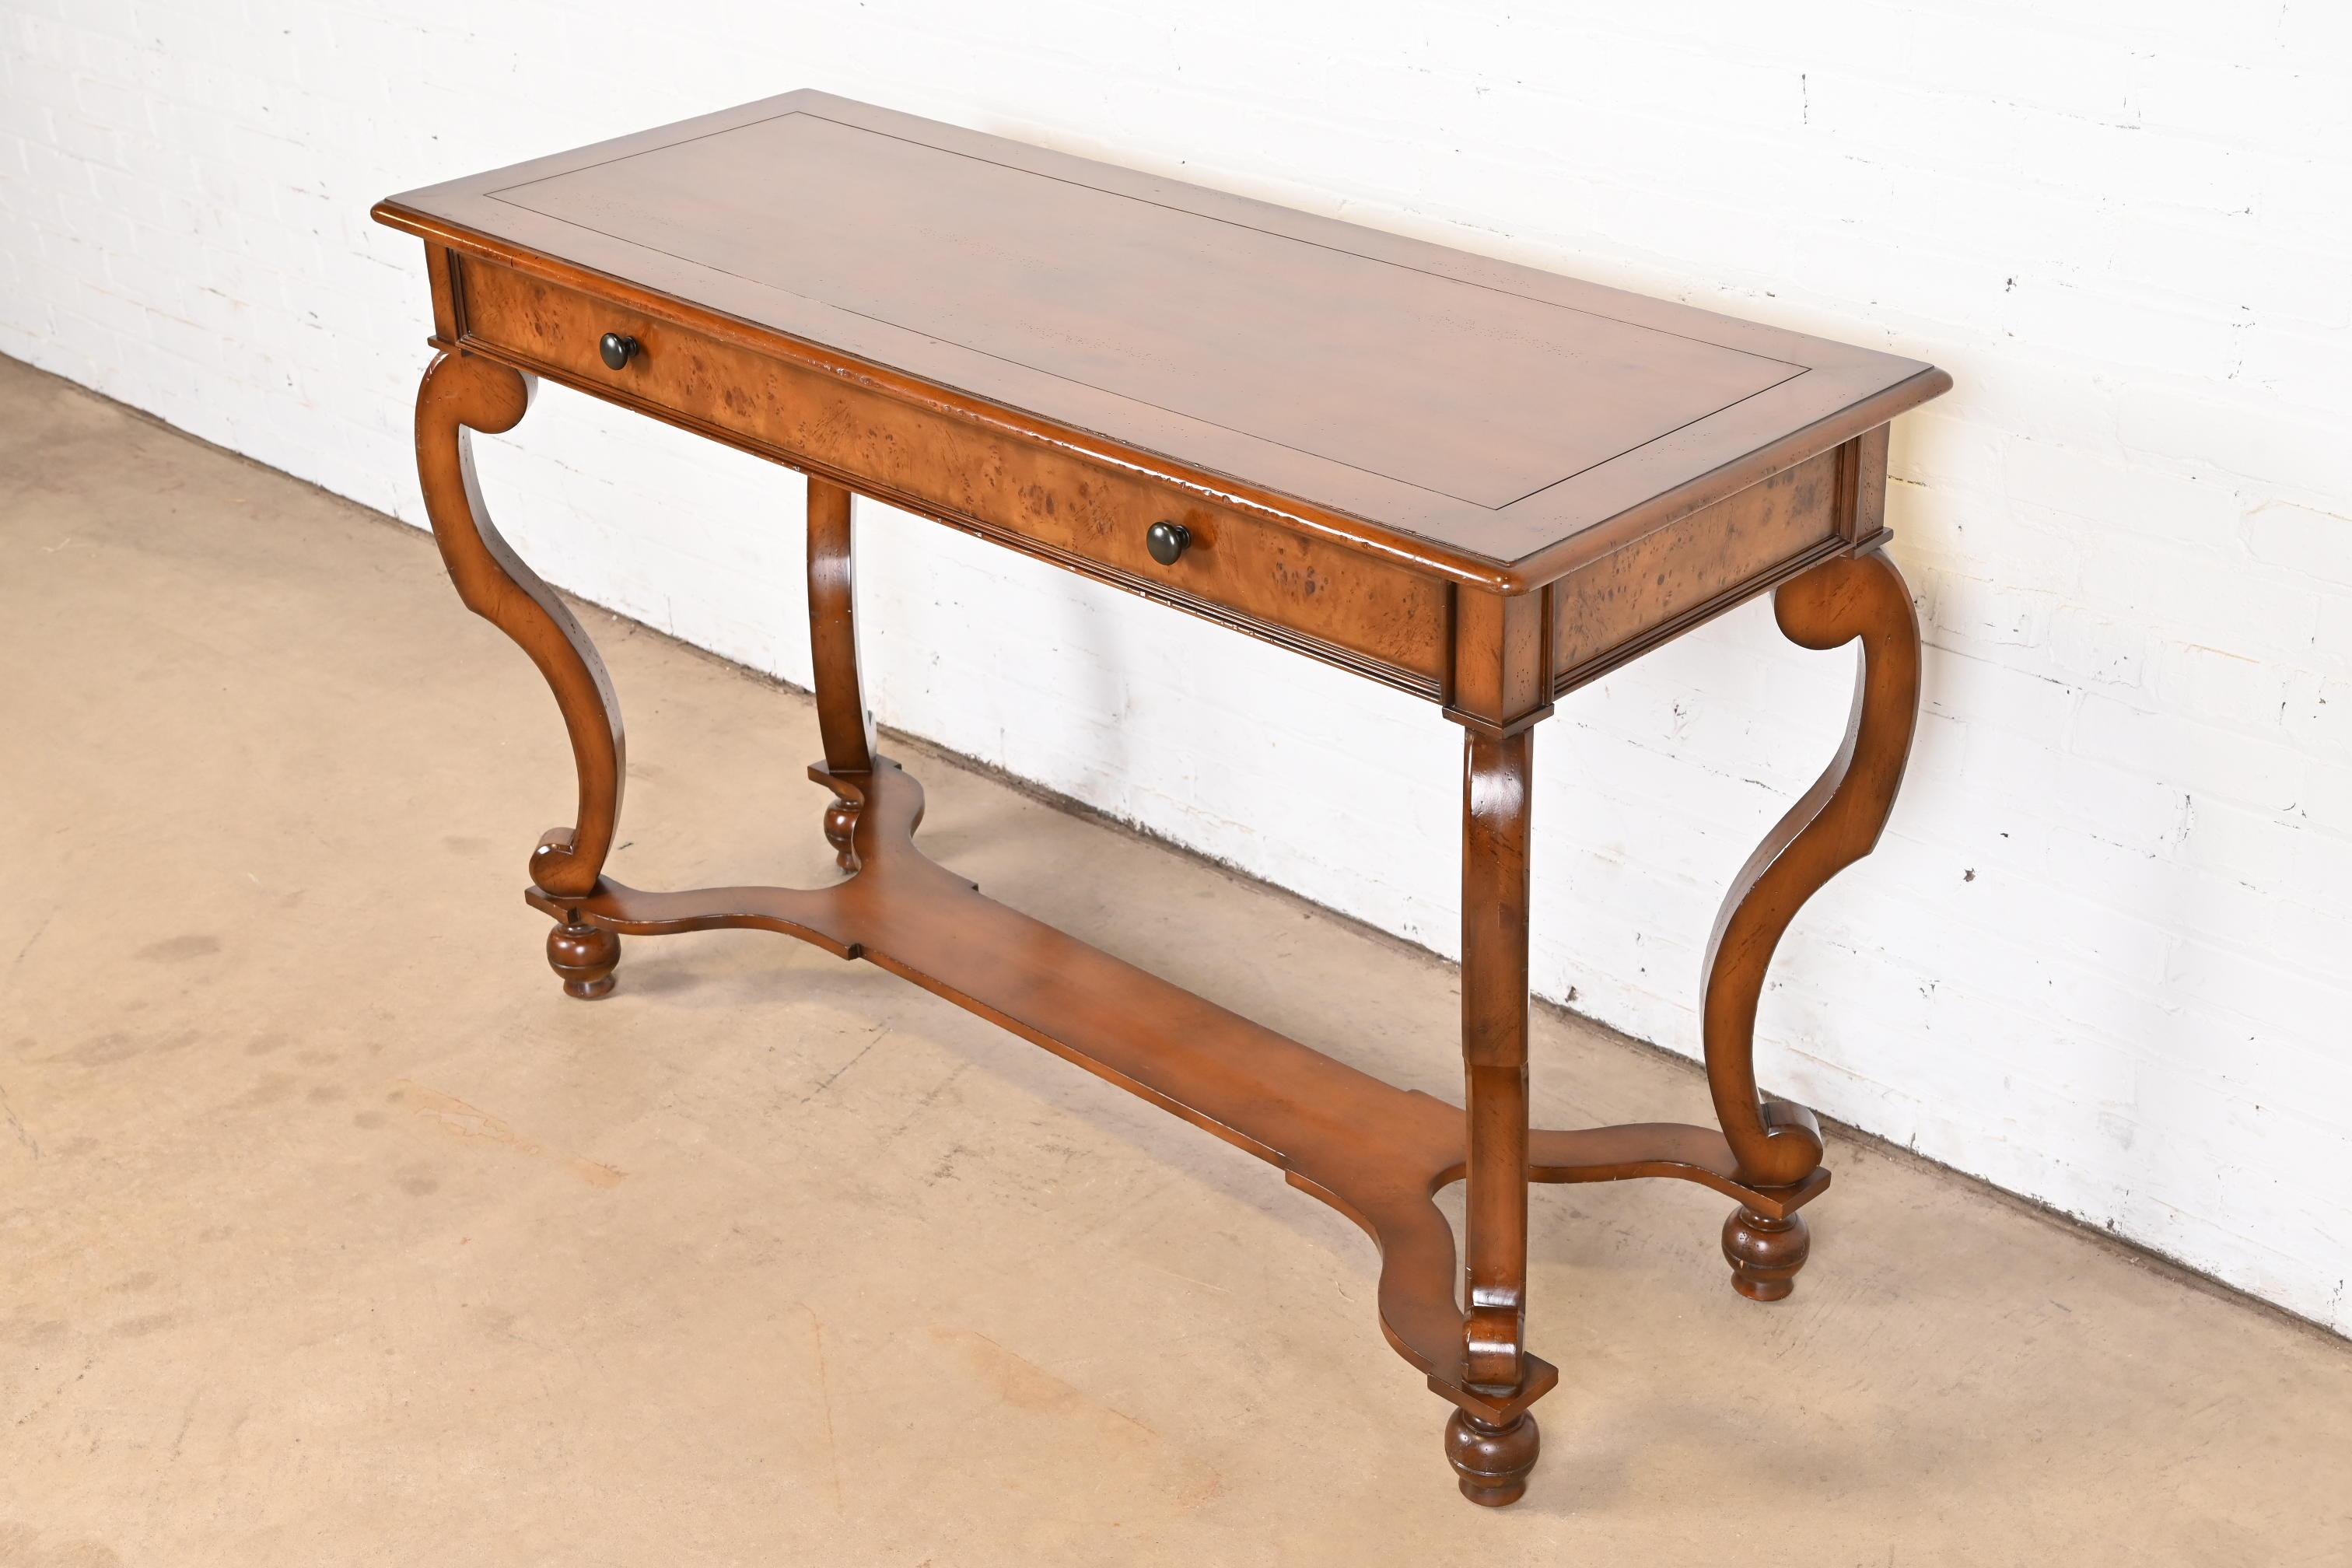 Une magnifique table console ou table de canapé de style provincial italien ou européen rustique

Par Baker Furniture, Collection 